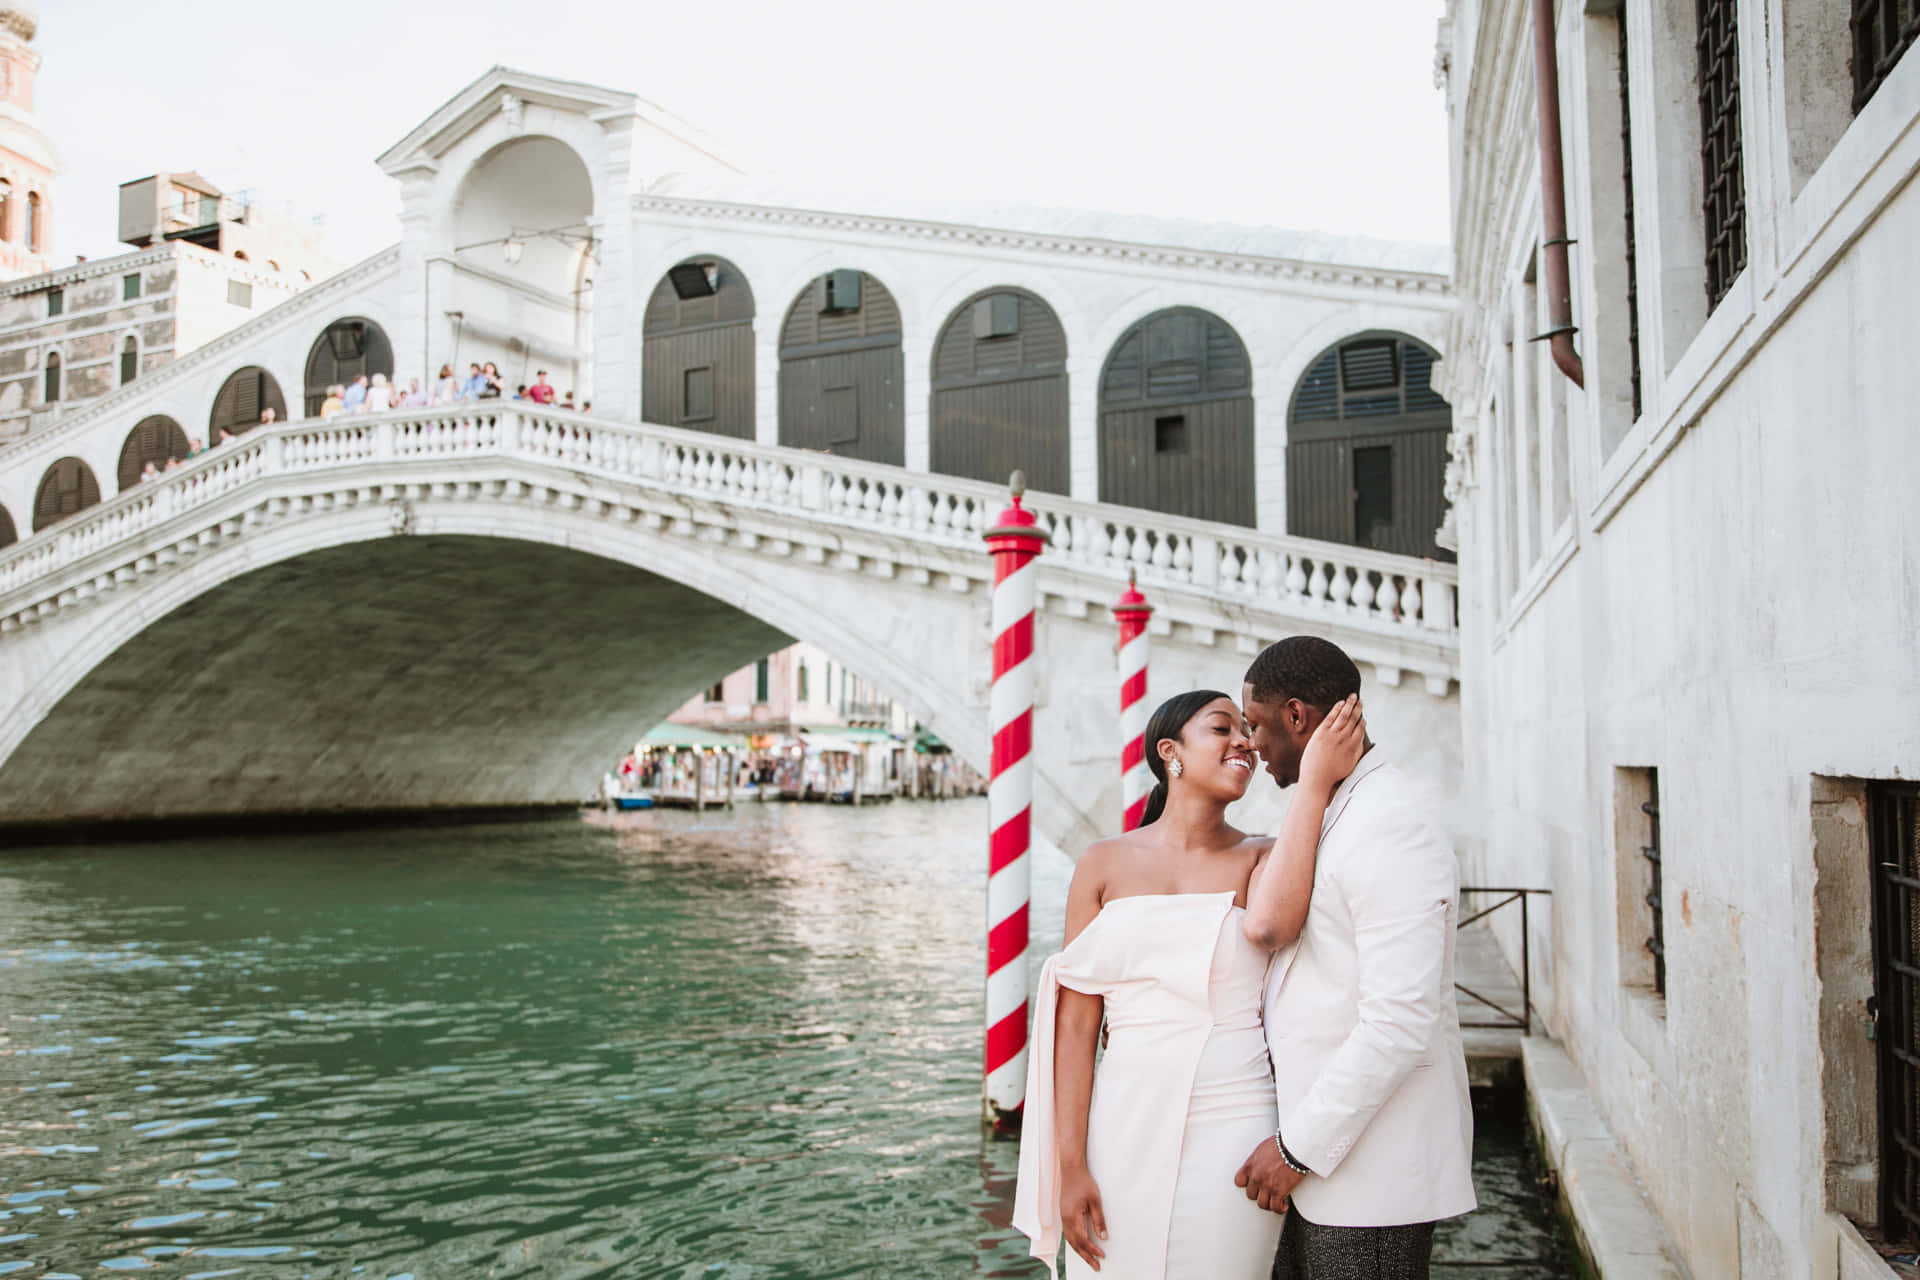 Tag et pre-ægteskabeligt fotoskud på Rialto-broen i Venedig i Italien Wallpaper